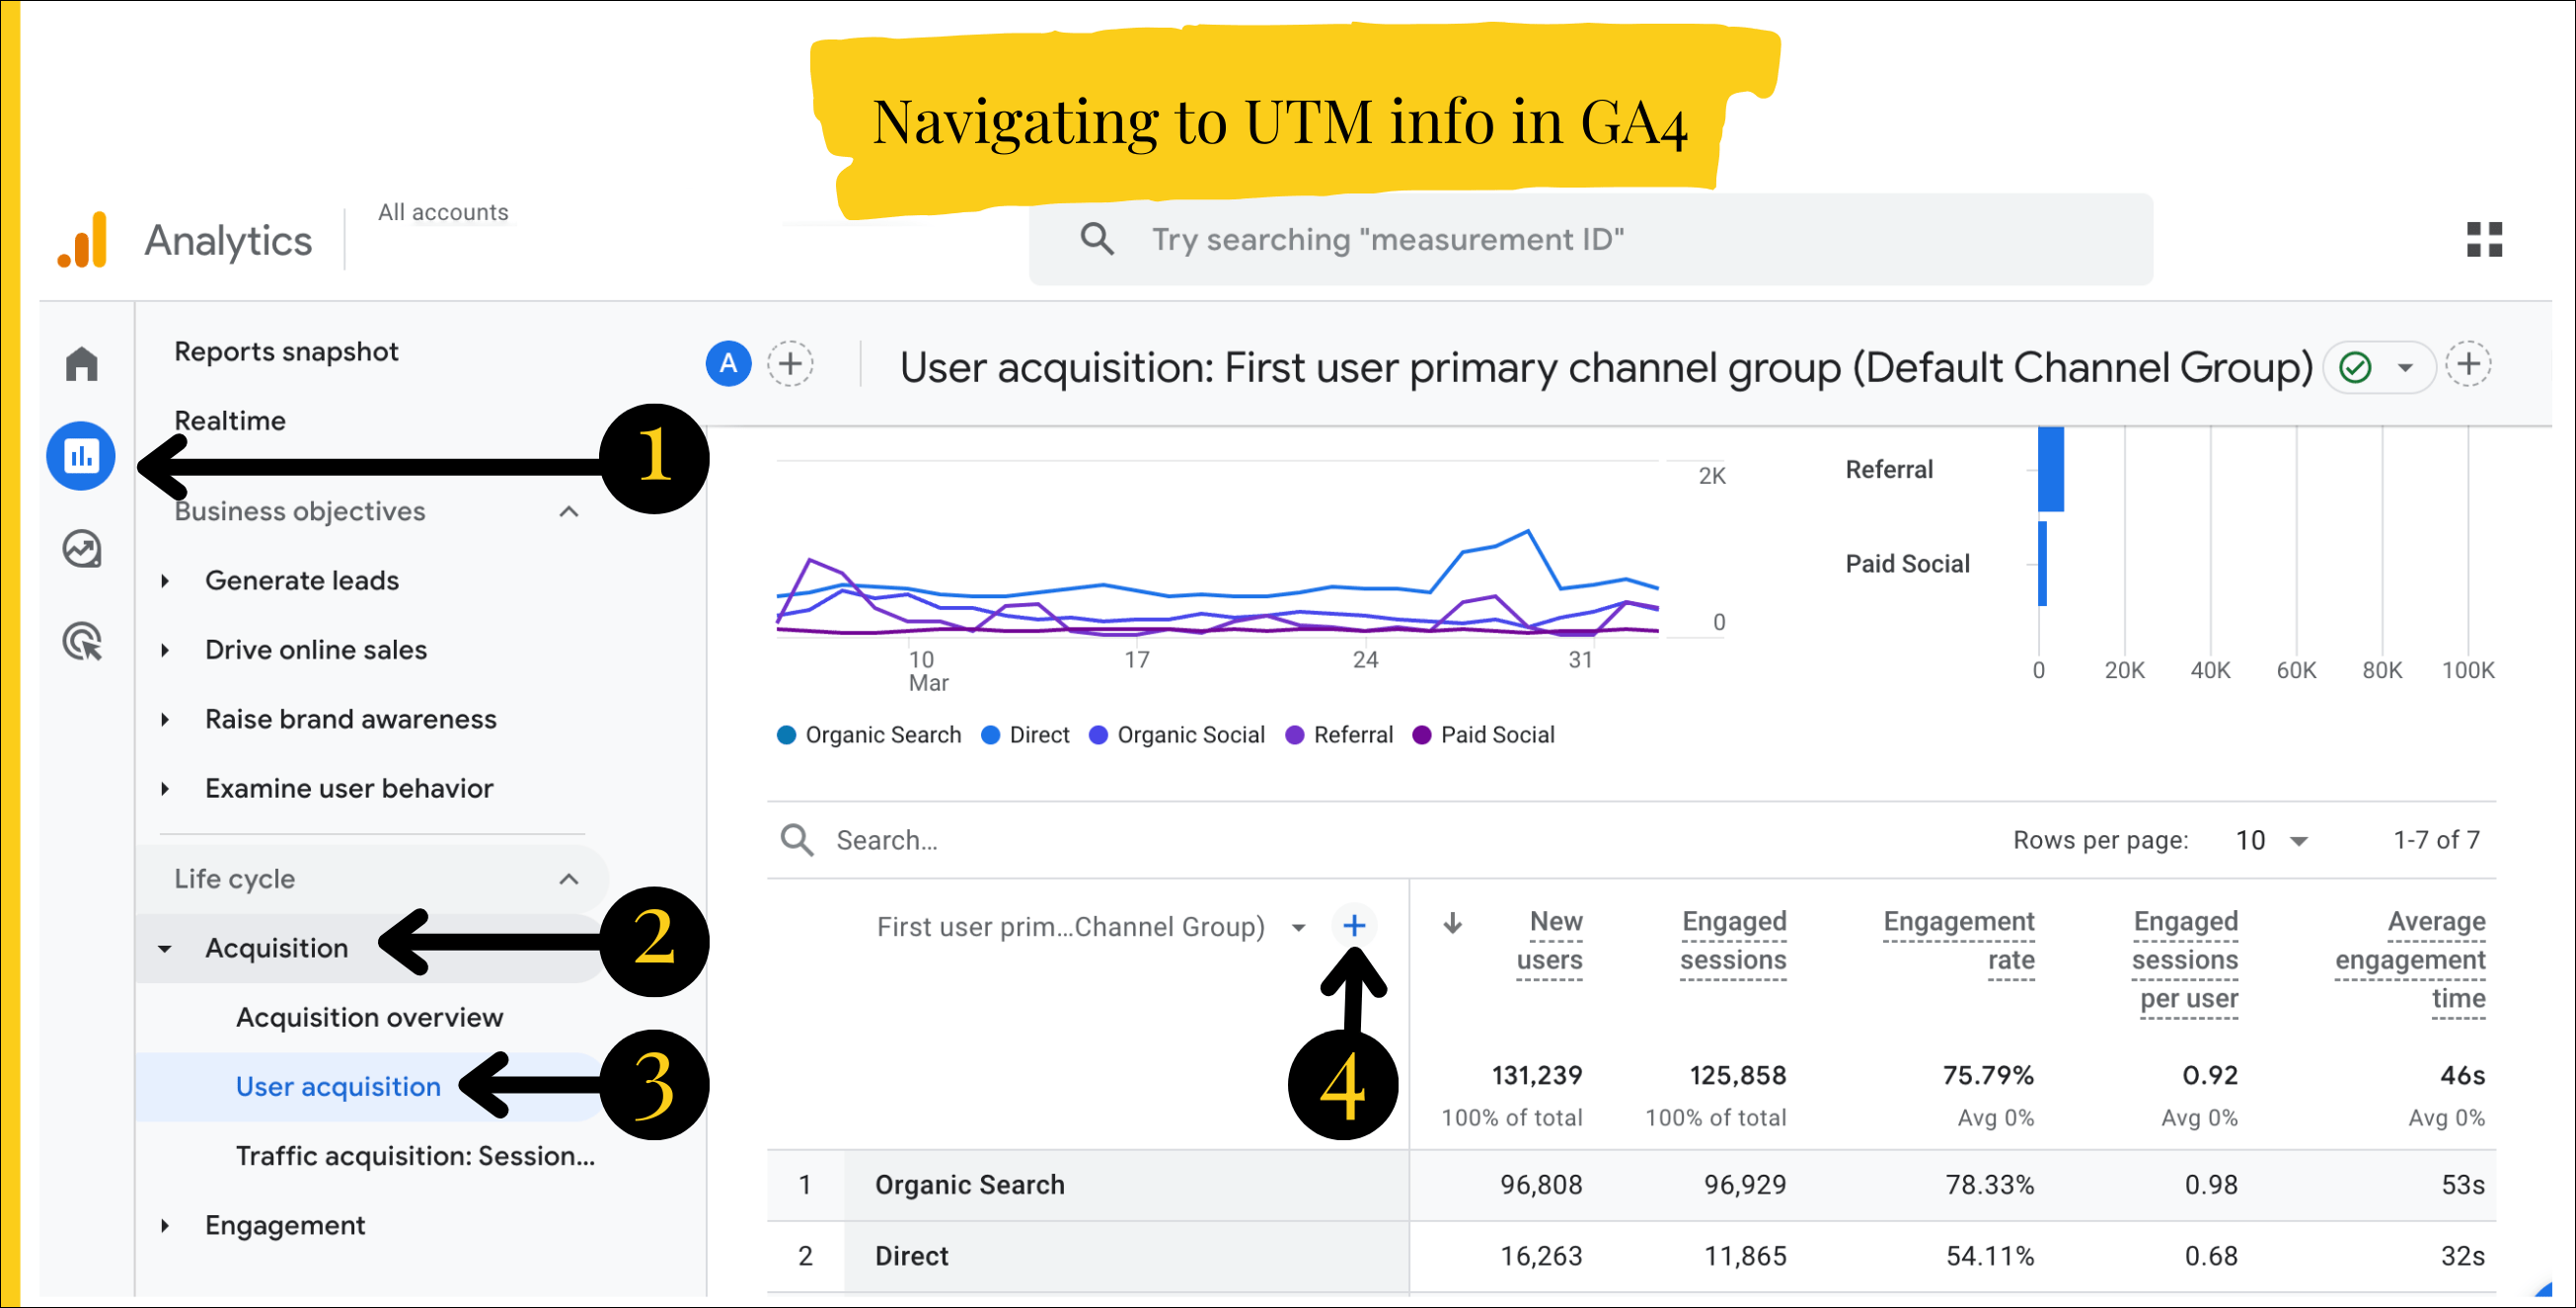 GA4 Navigating to UTM Information